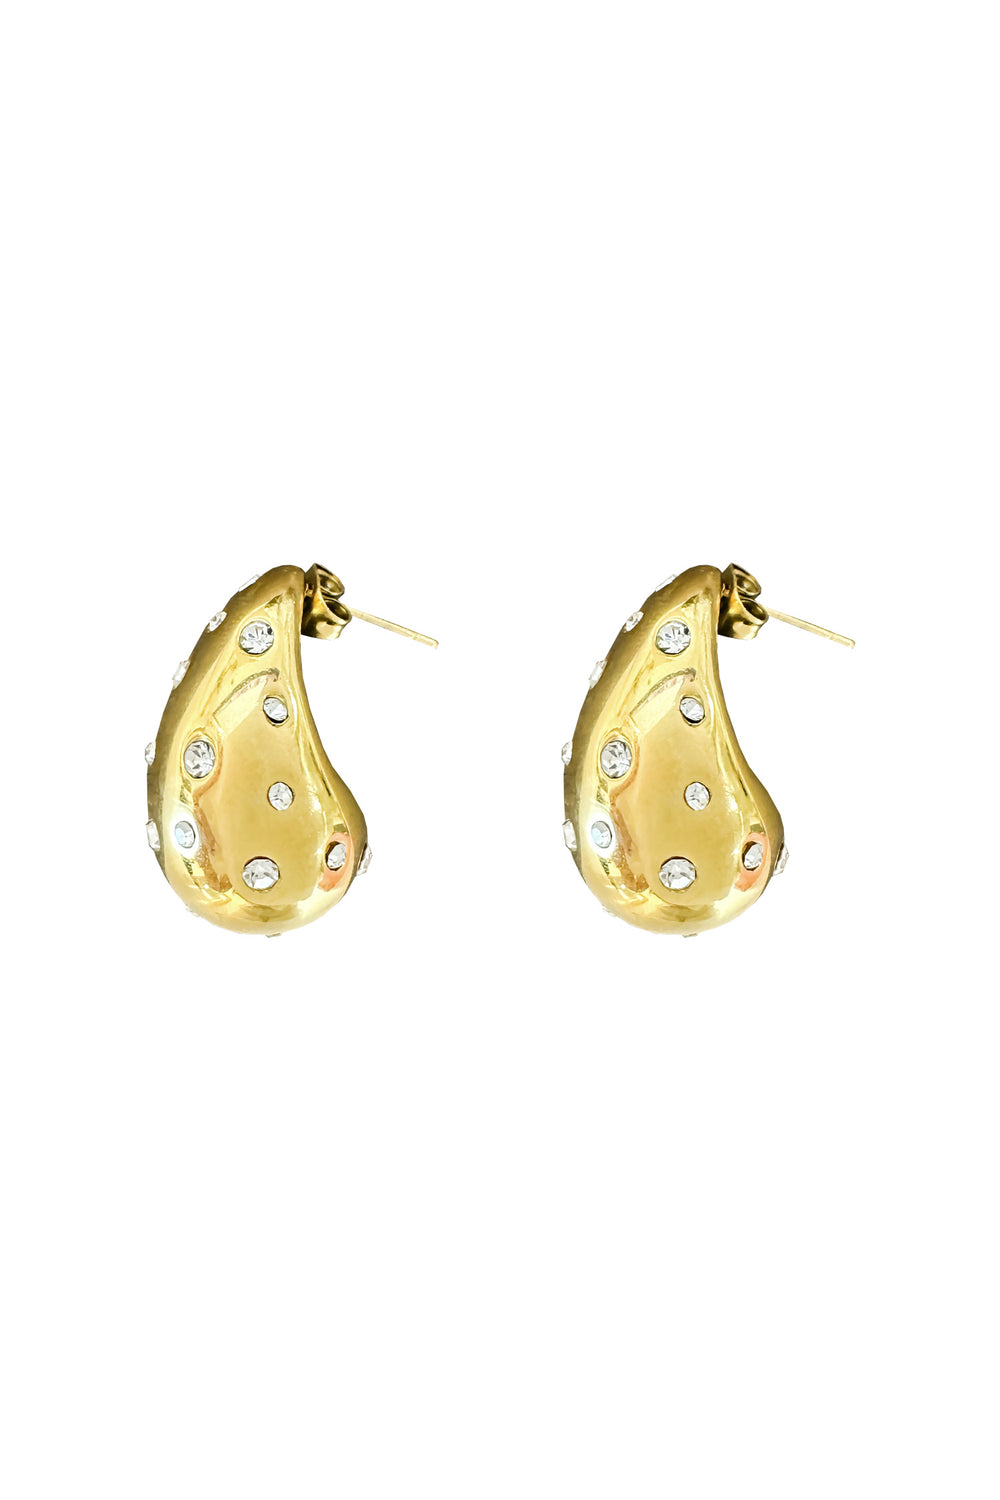 Evelyn Gold Earrings